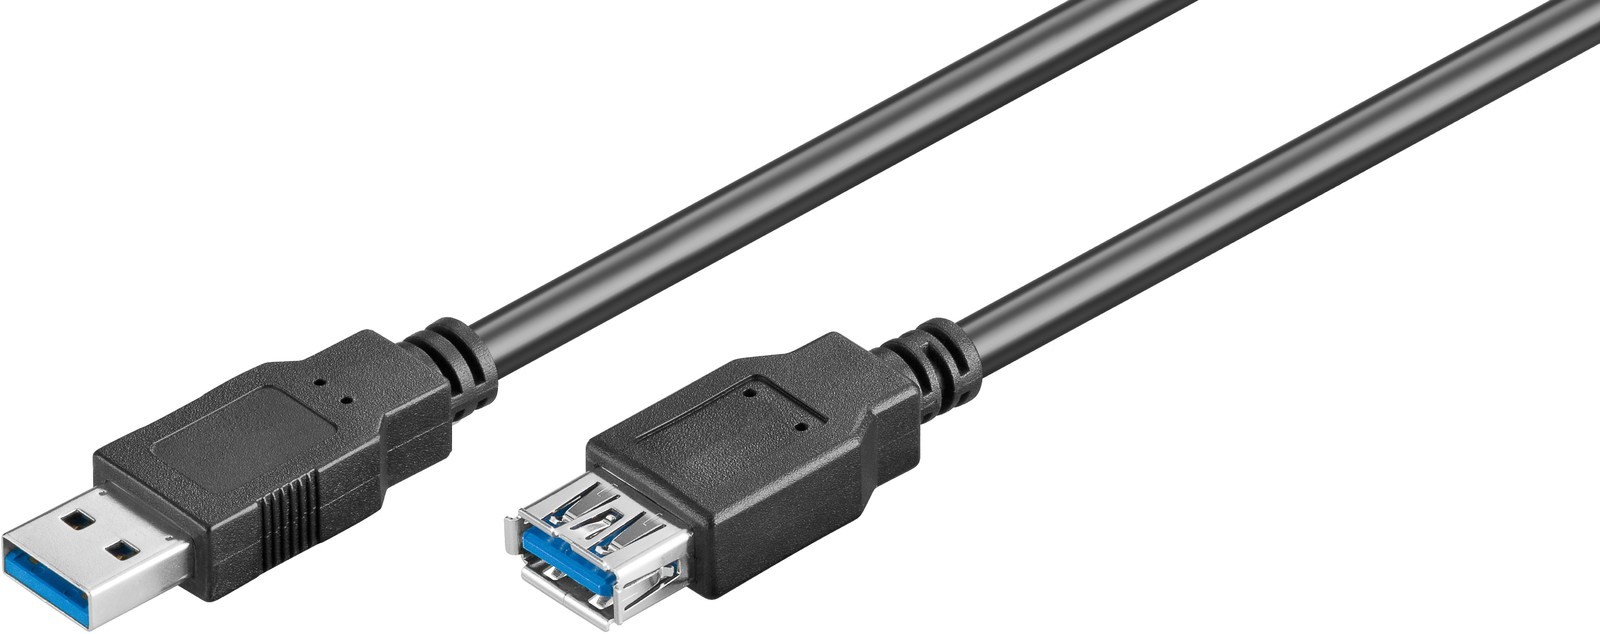 Extensor cable USB 3.0 Macho-Hembra de 1m mic?